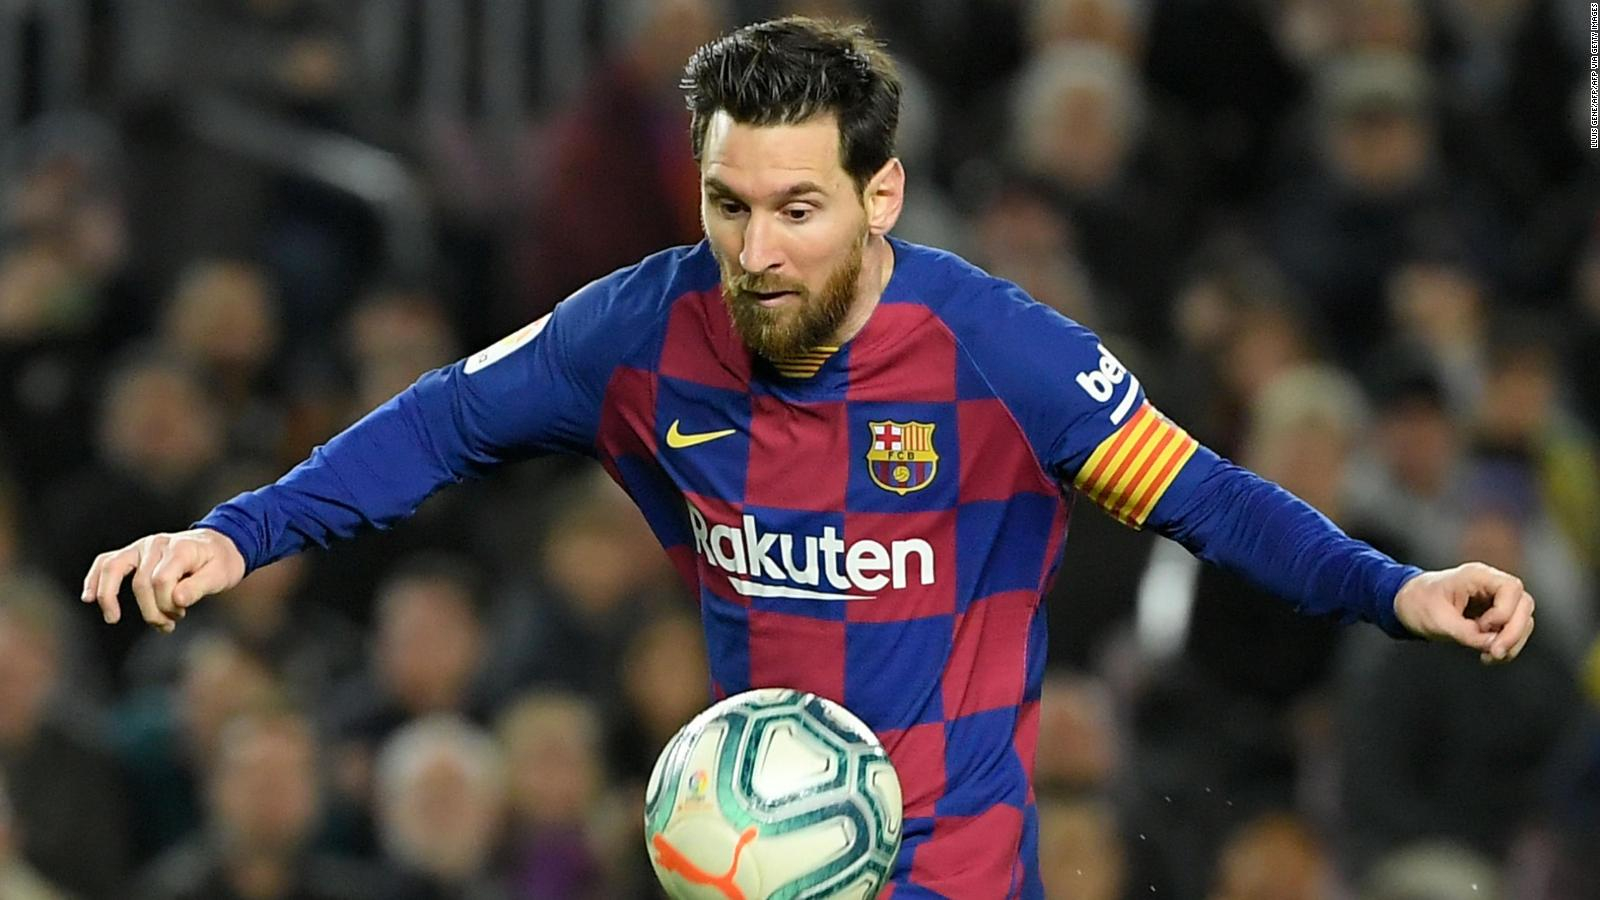 Leo Messi, El Nacional